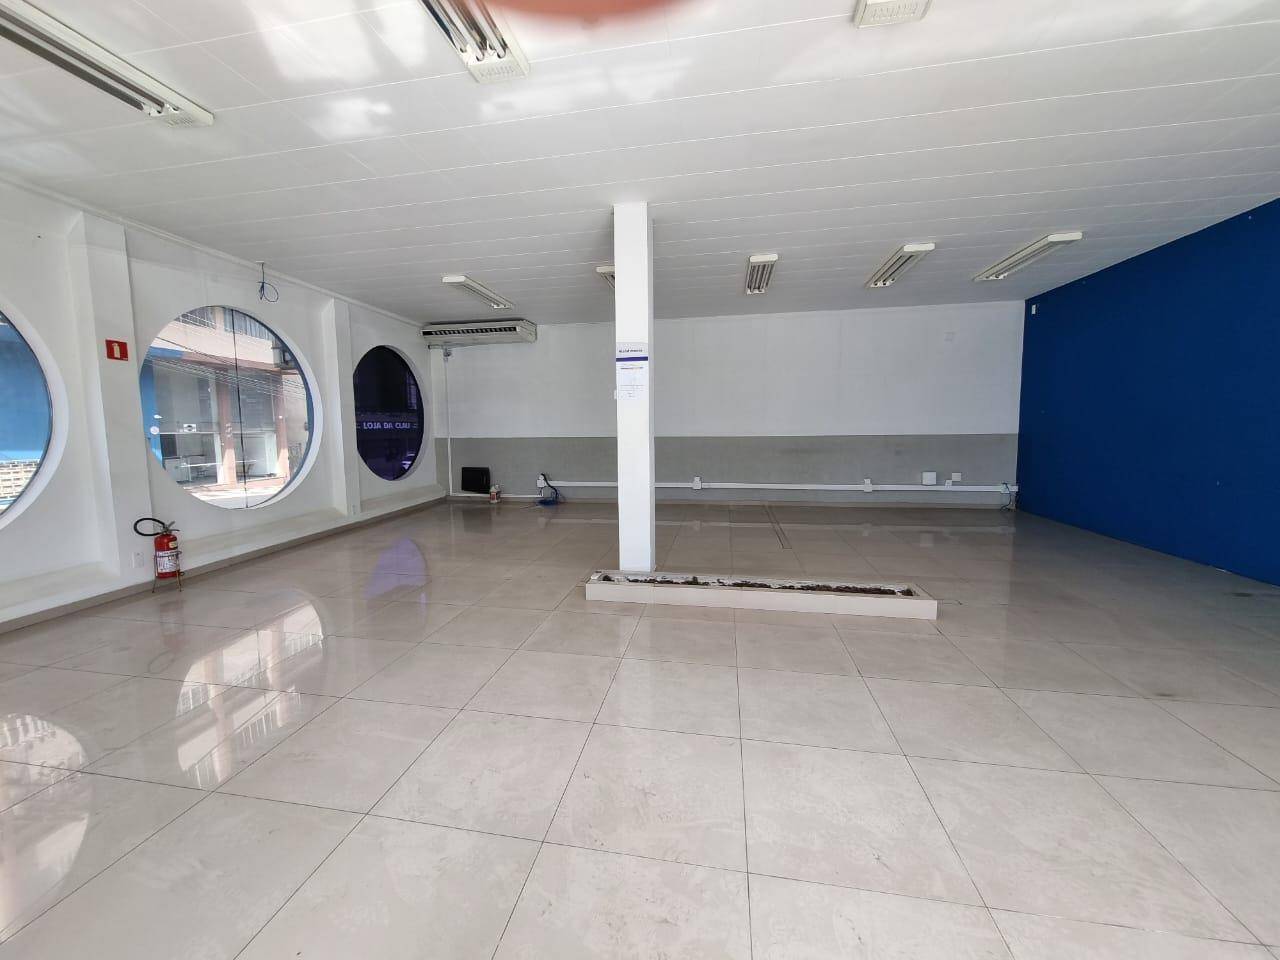 Sala para vendalocacaovenda e locacao no Centro em Ponta Grossa com 400m² por R$ 3.800.000,0019.900,00